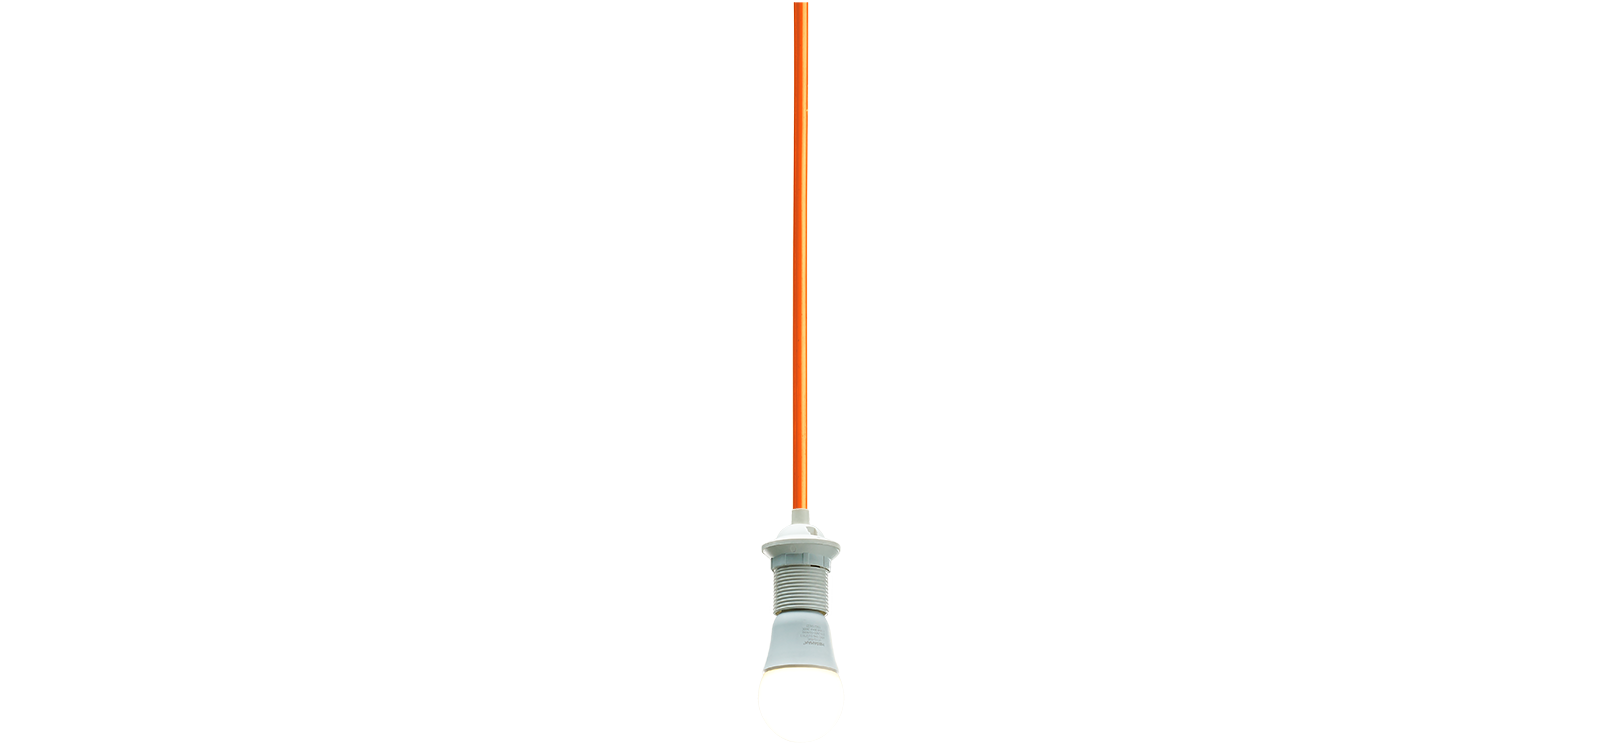 Kabel [orange] 1,2 m lang